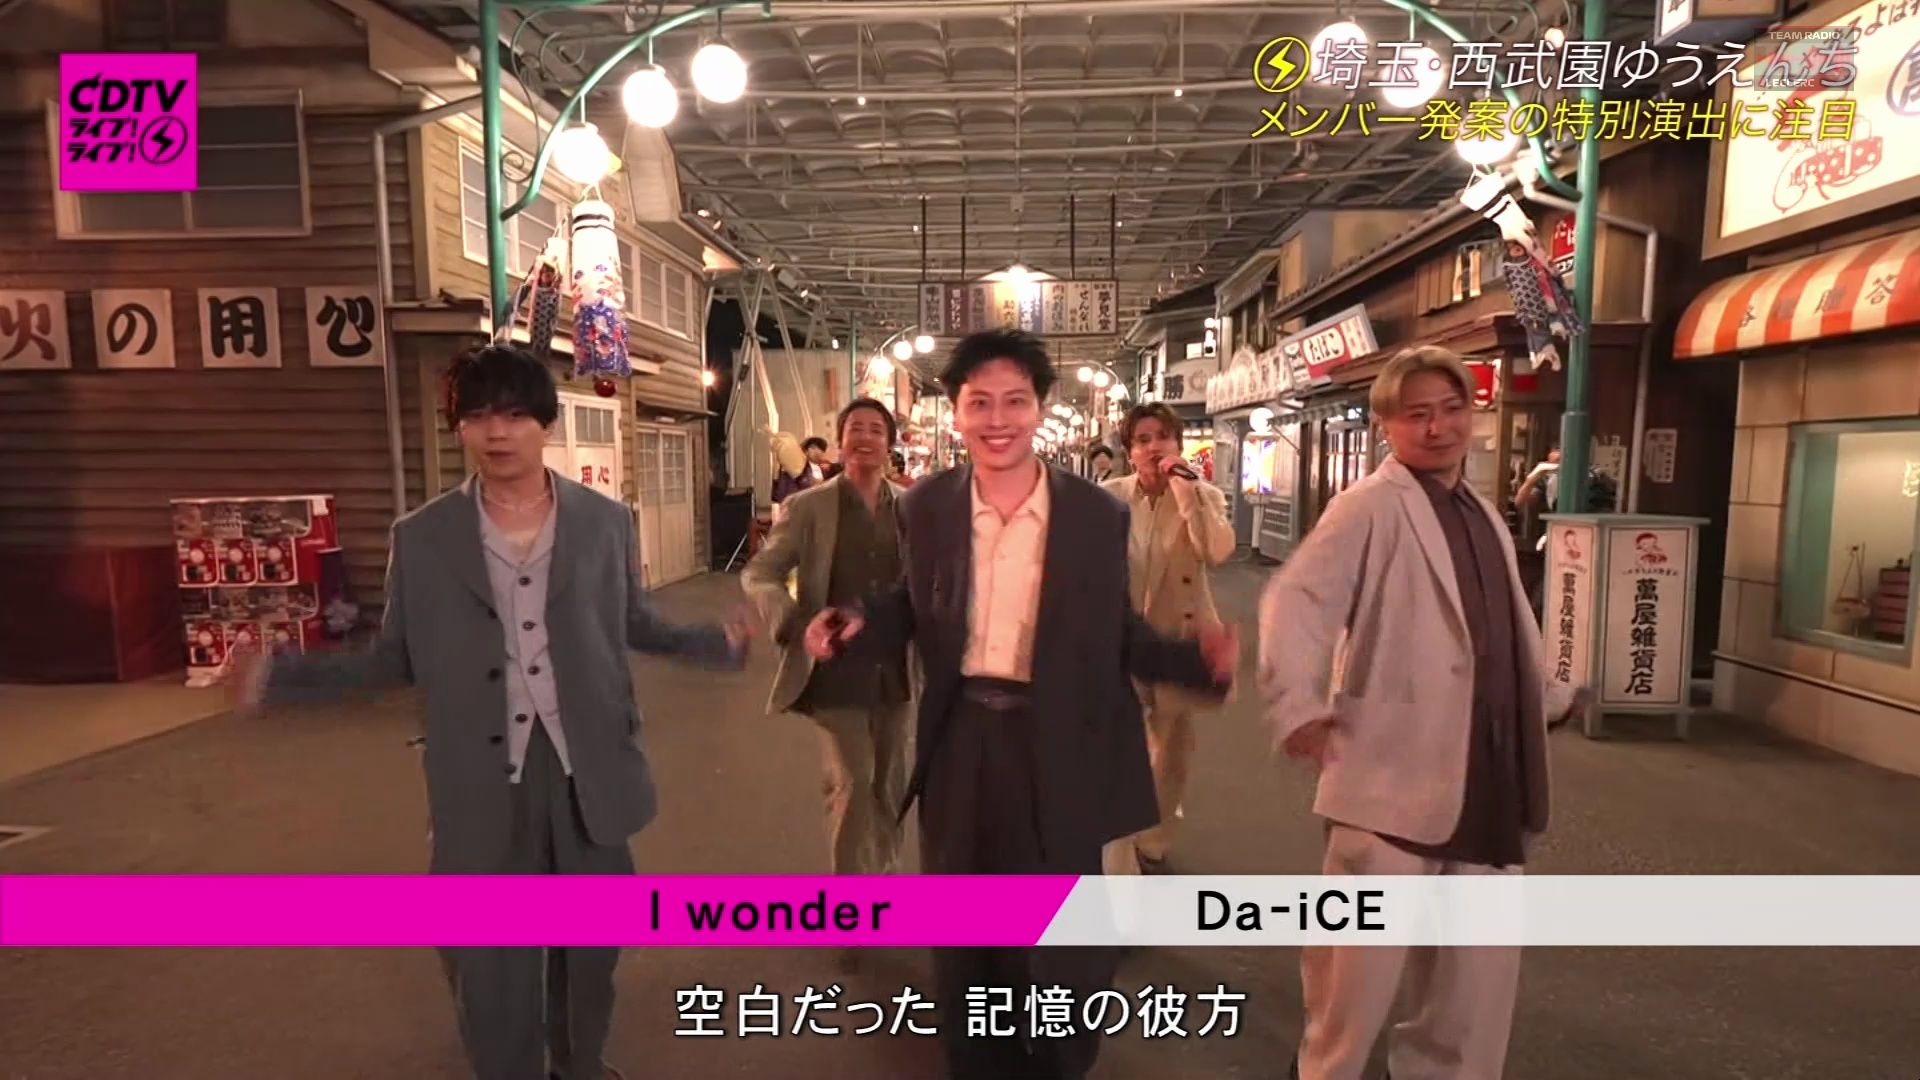 【Live】Da-iCE「I wonder」